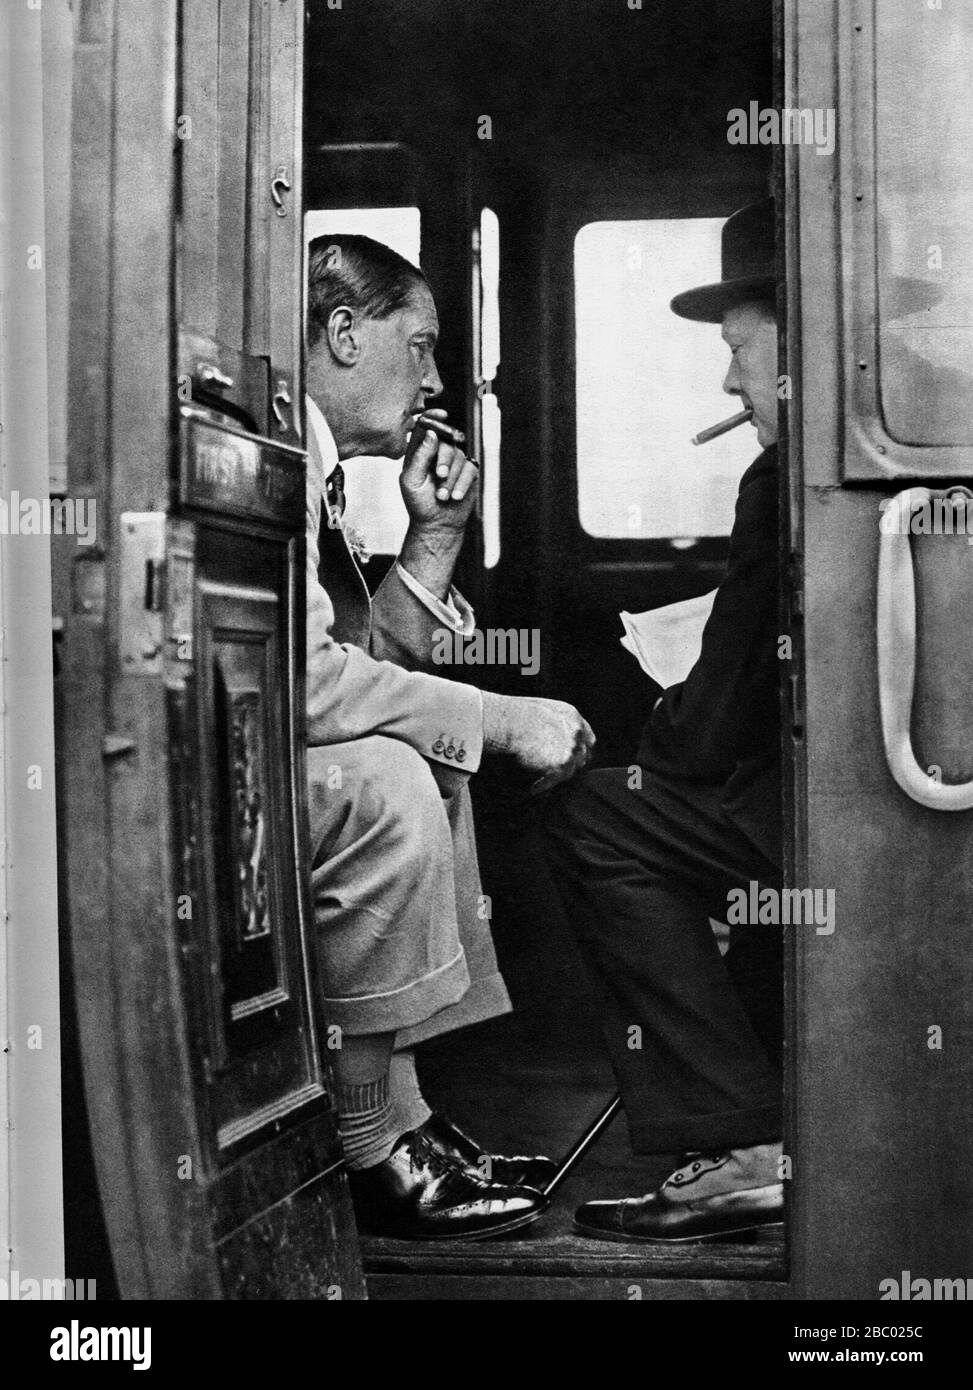 Winston Churchill bietet Auf Wiedersehen seinem Freund Lord Bikenhead an, dem ehemaligen F.E.Smith, der auf dem Weg zu einem Urlaub in Amerika ist. Juli 1929 Stockfoto